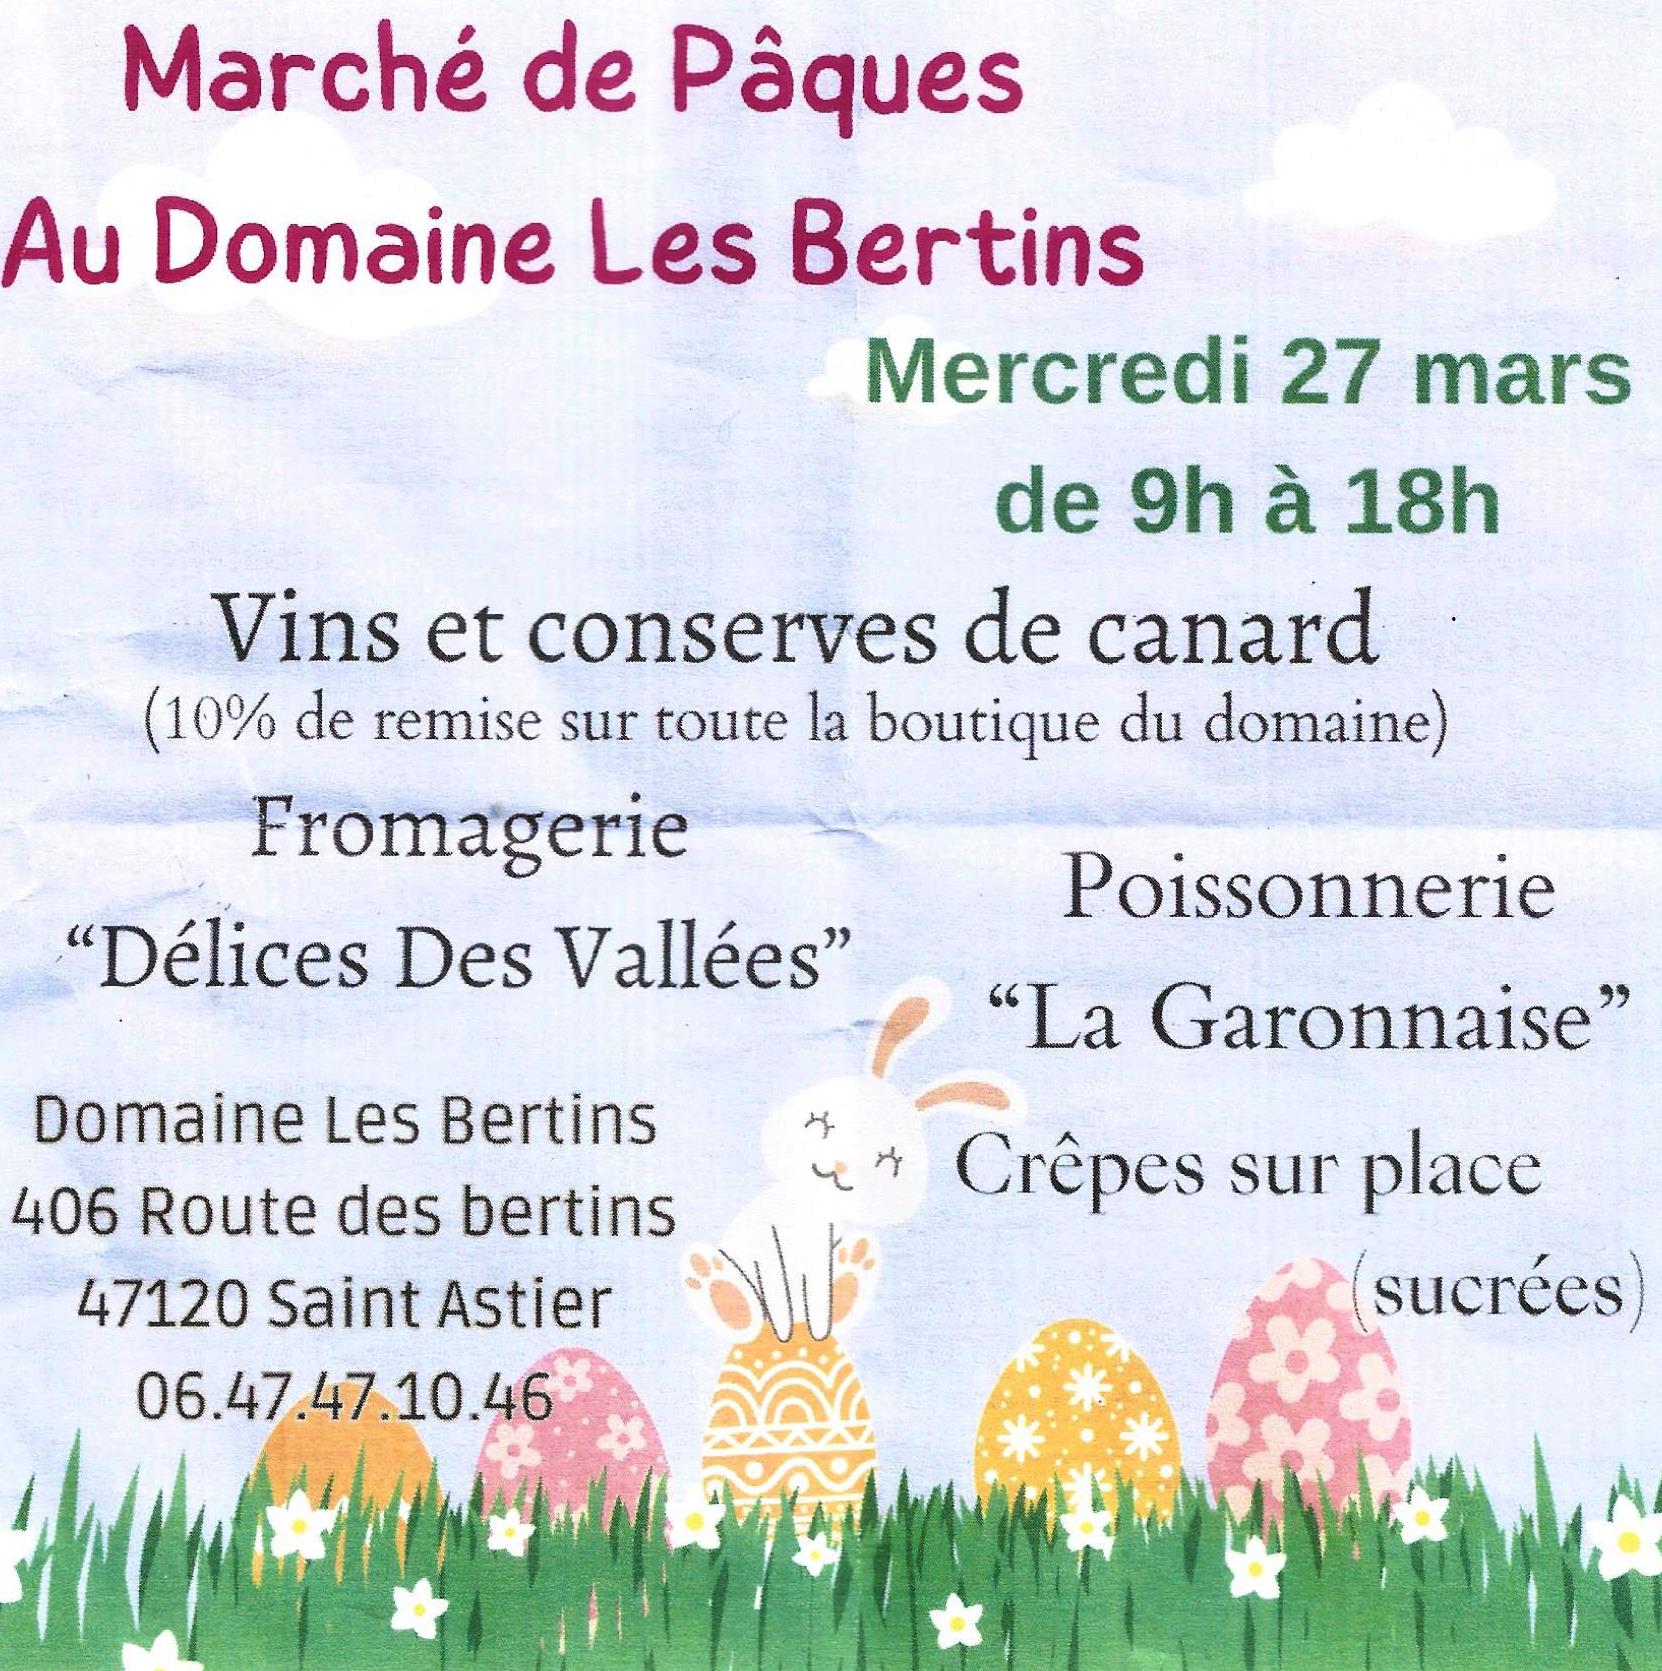 Marché de Pâques au Domaine Les Bertins